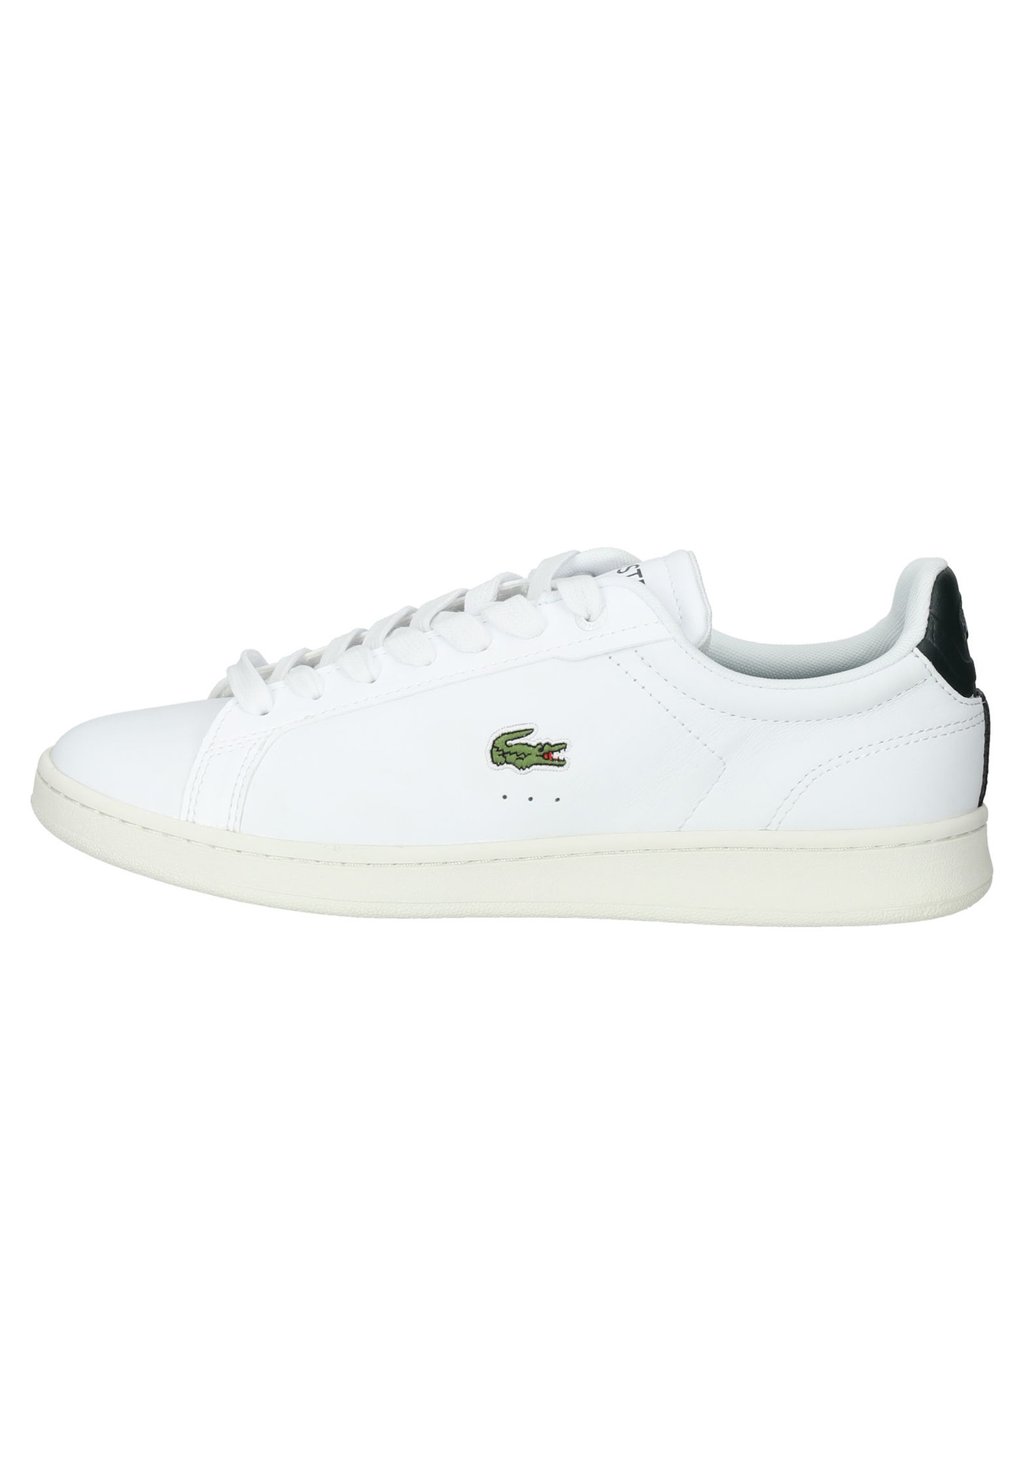 Кроссовки Lacoste Carnaby Pro 123 9 Sma, белый / темно-зеленый кроссовки lacoste zapatillas wht lt grn